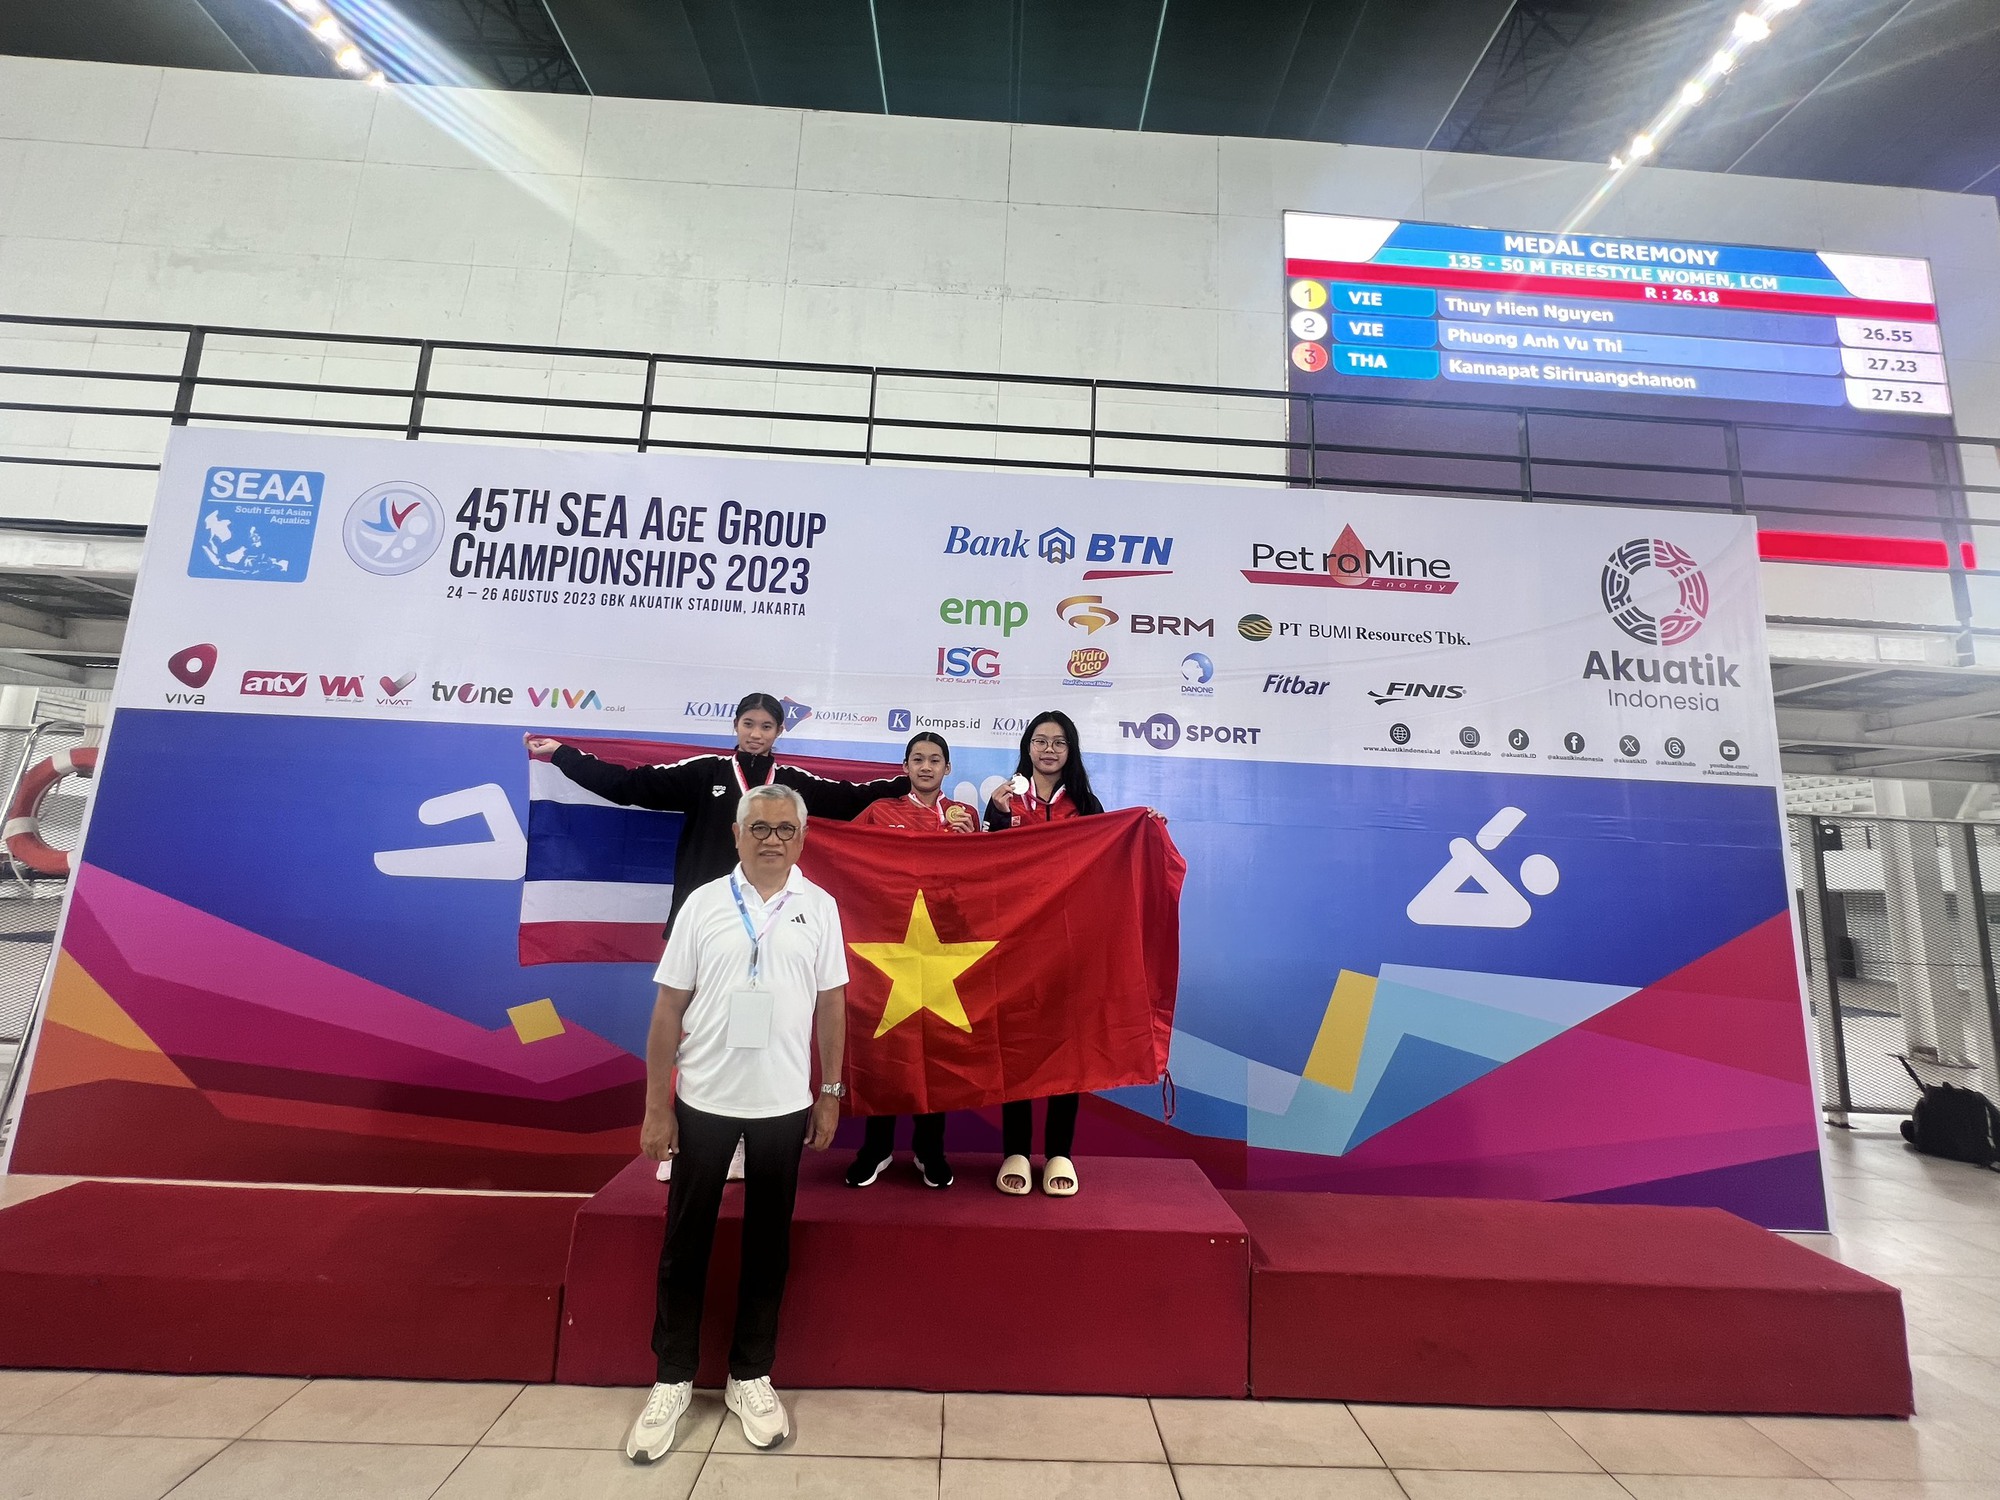 Thần đồng bơi lội Thúy Hiền tỏa sáng, Việt Nam thắng lớn tại giải trẻ Đông Nam Á - Ảnh 2.